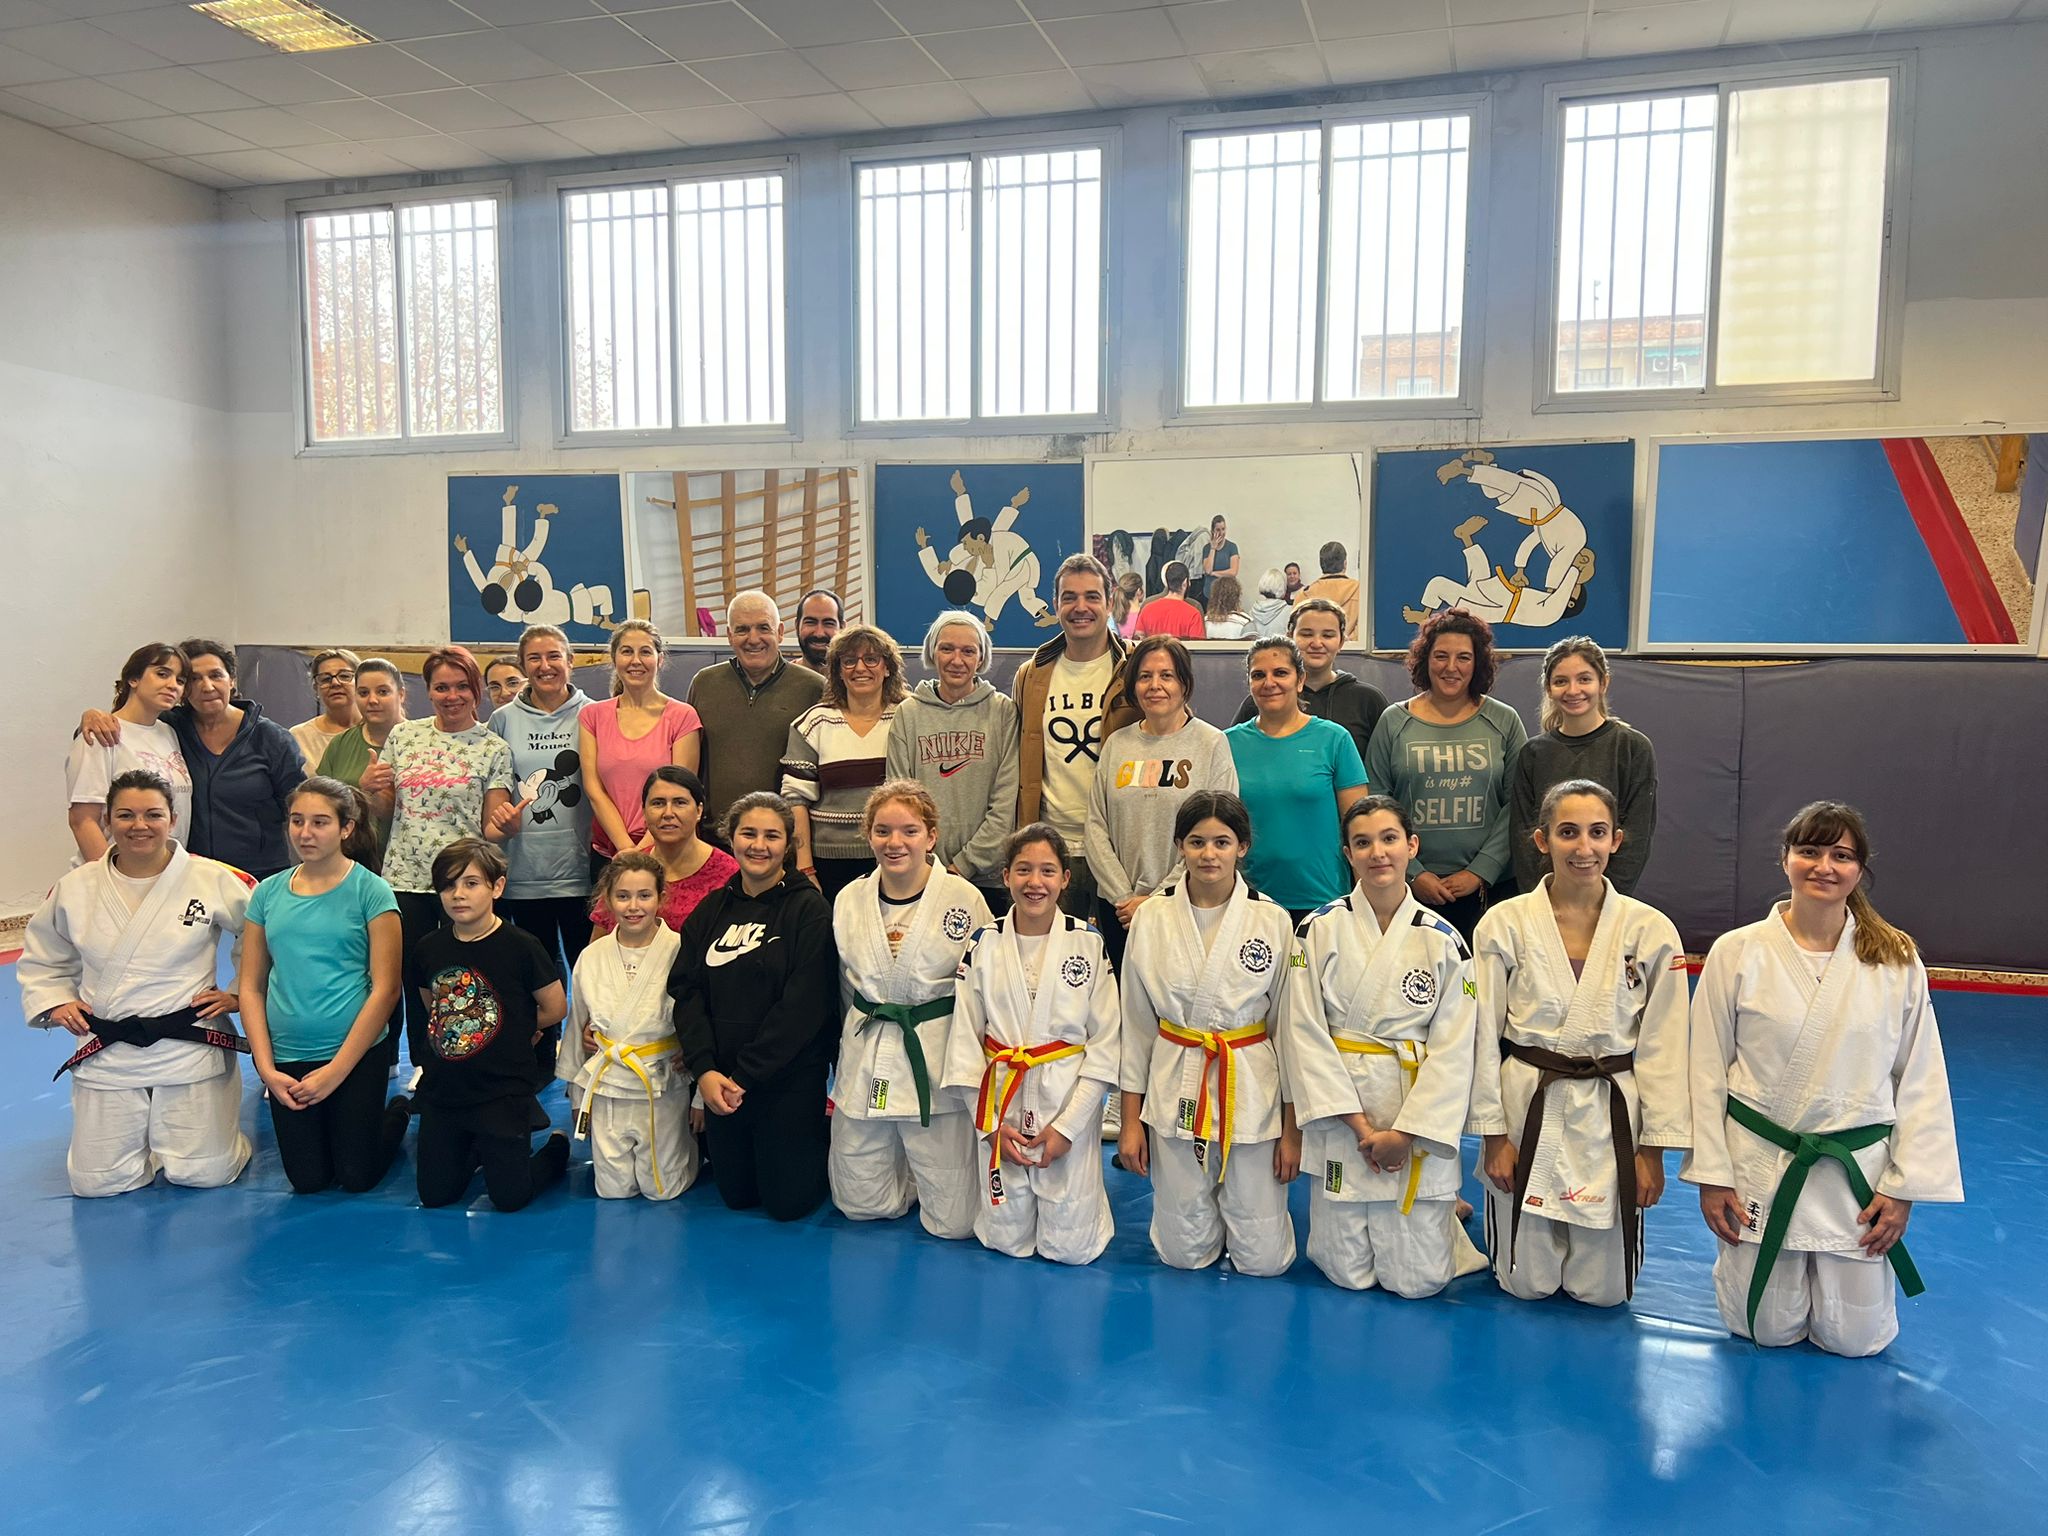 Viaje Interconectar Justicia Una treintena de mujeres luchan en Toledo contra la violencia de género de  la mano del judo y aprendiendo defensa personal - Noticias Toledo y  Provincia | Toledodiario